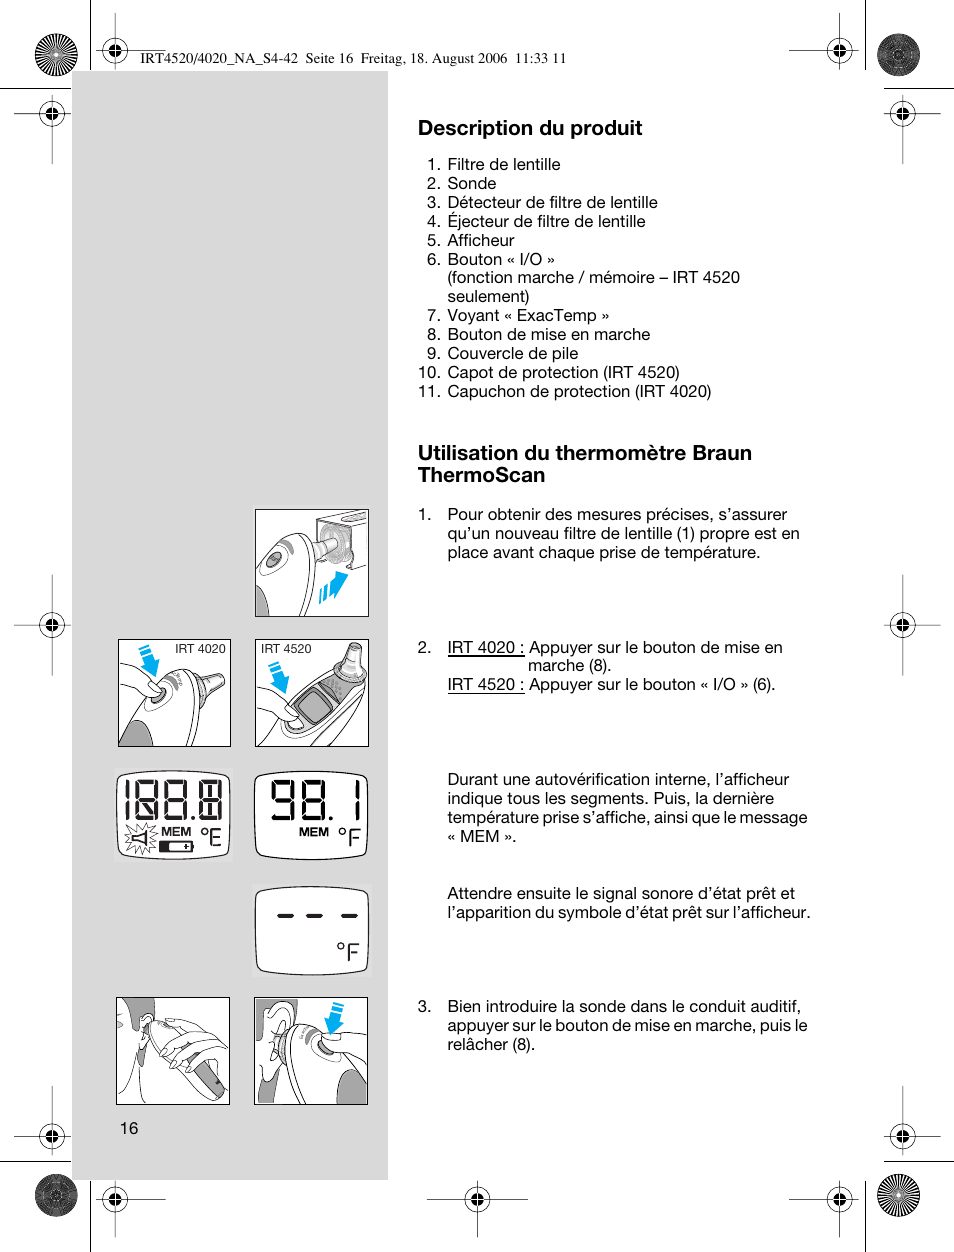 Description du produit, Utilisation du thermomètre braun thermoscan | Braun  ThermoScan IRT 4520 User Manual | Page 16 / 42 | Original mode